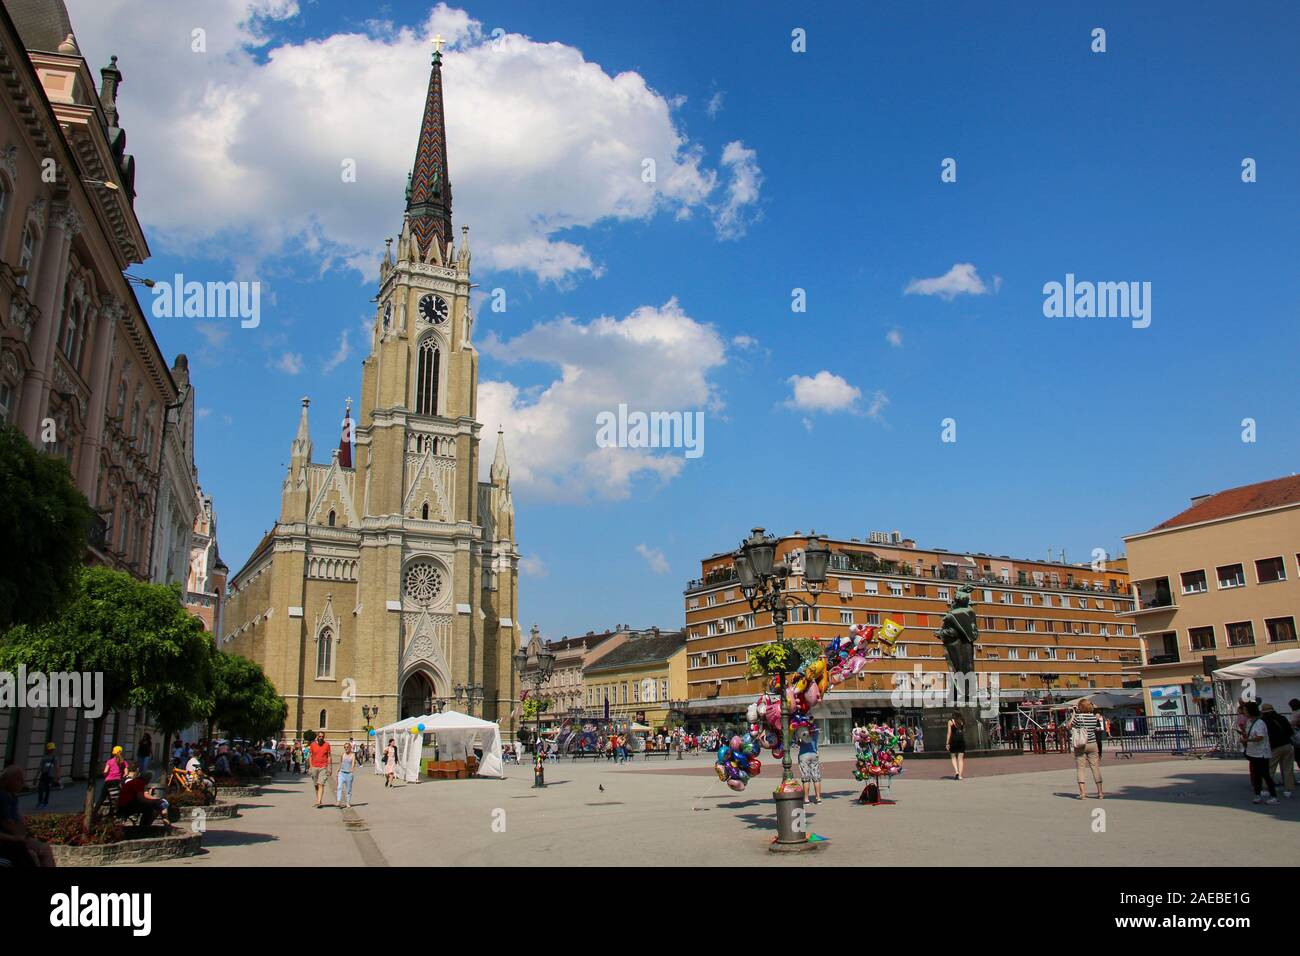 NOVI SAD, Serbien - Juni 07, 2019: Platz der Freiheit (Serbisch: Trg slobode) ist der Hauptplatz in Novi Sad, Serbien Stockfoto